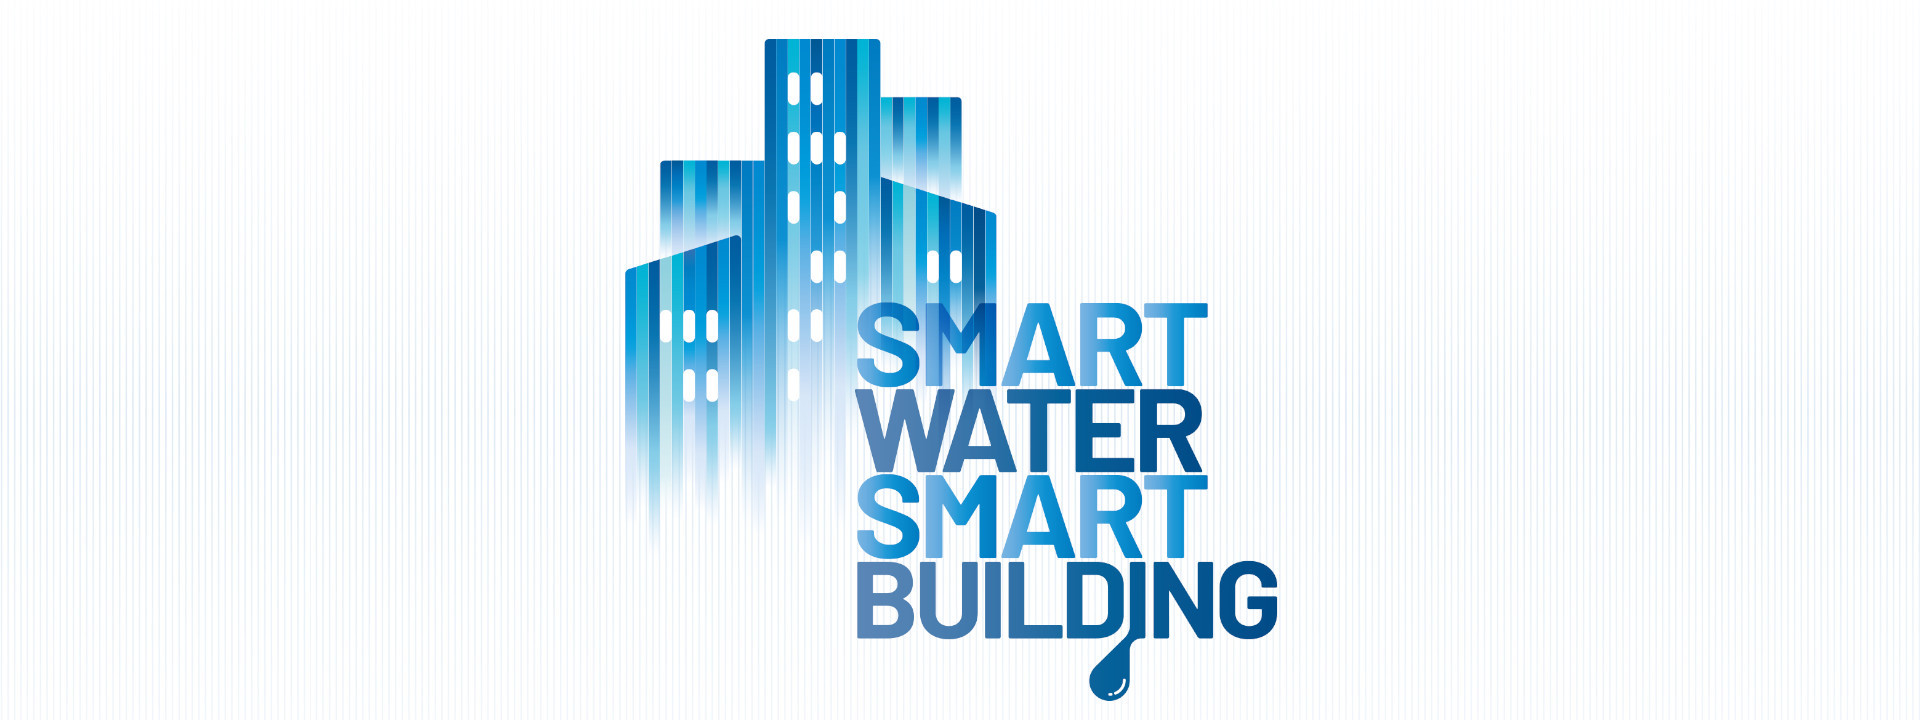 Smart Water, Smart Building